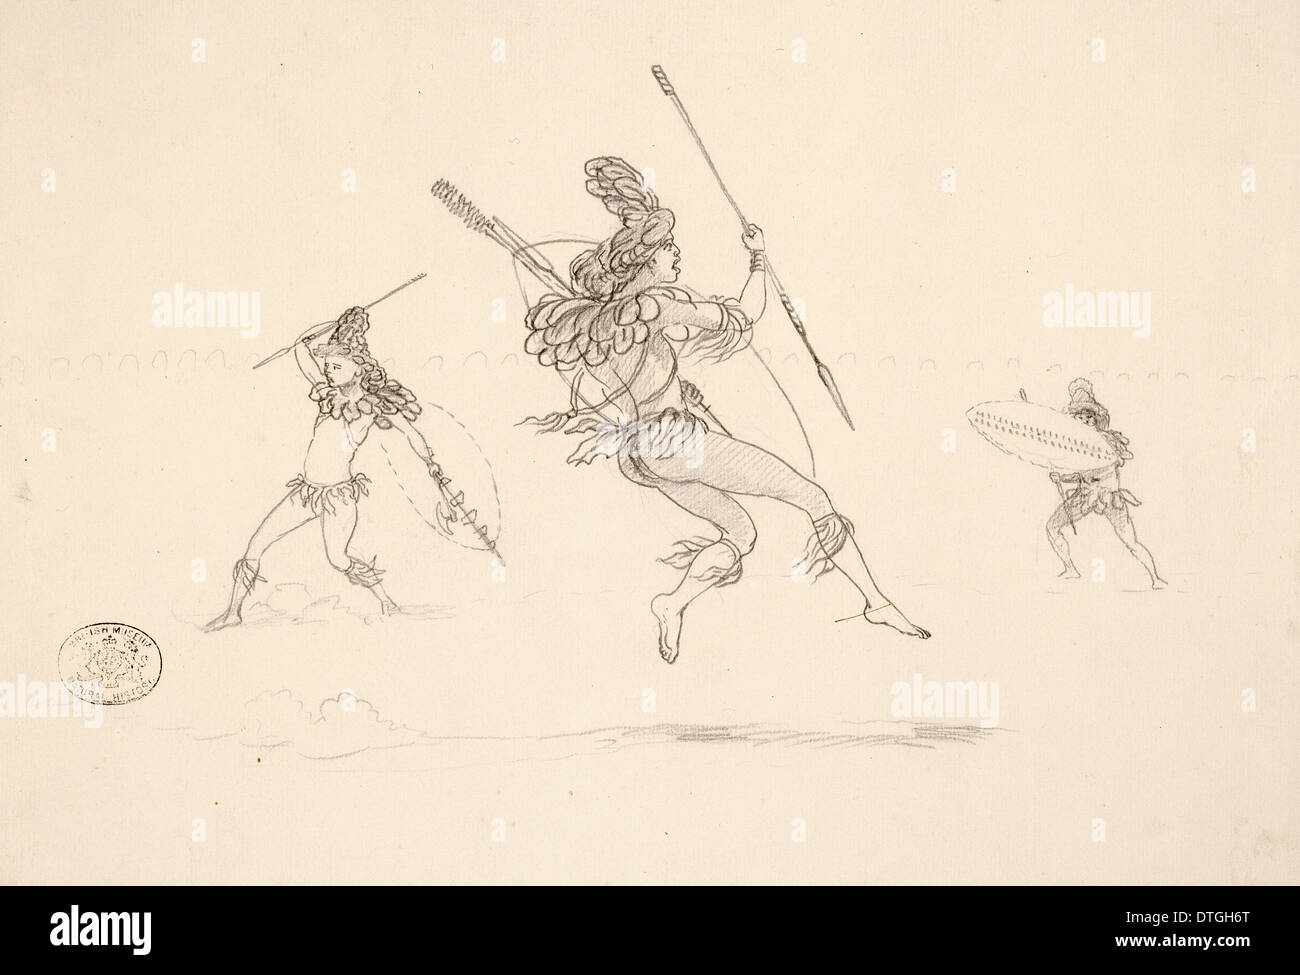 Warriors dancing, 1870 Stock Photo